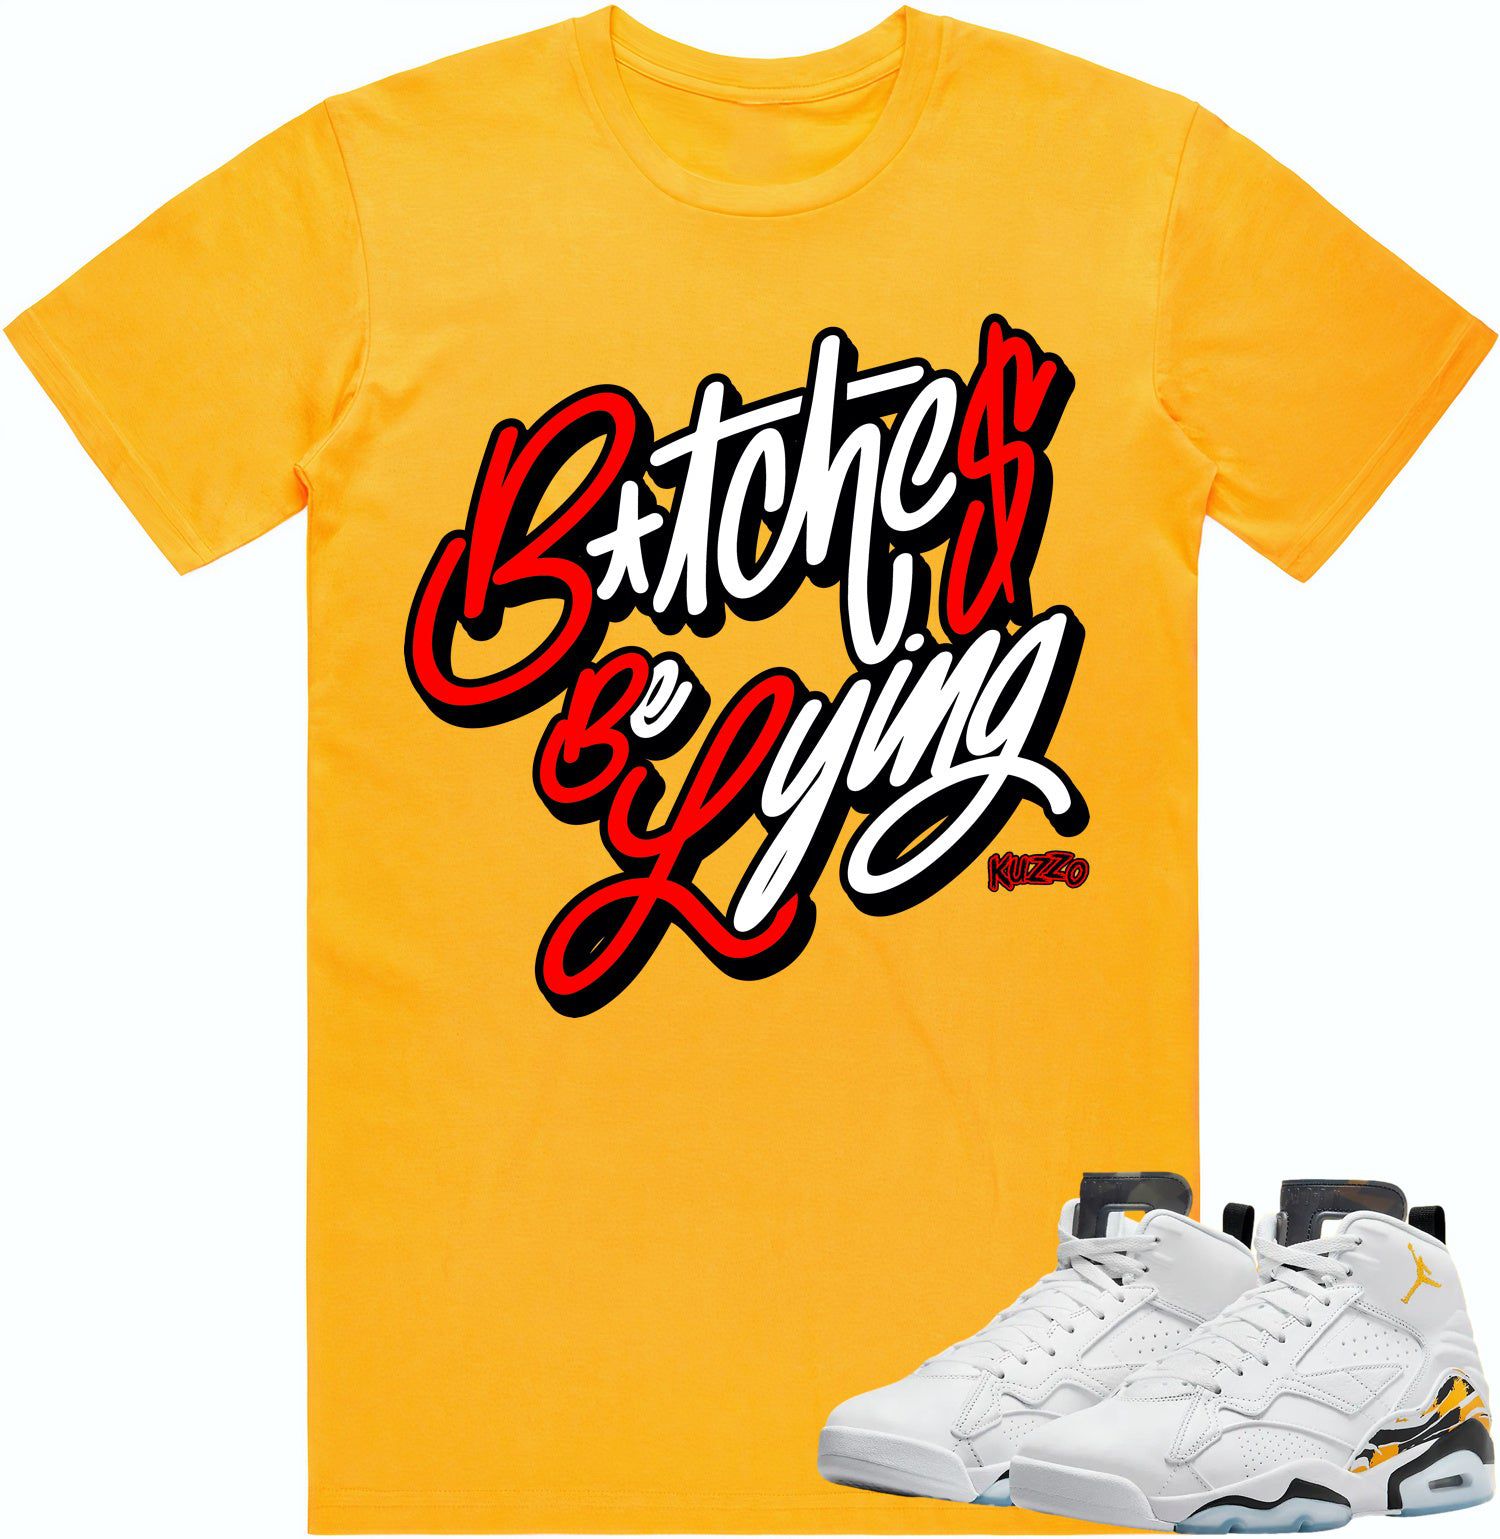 Yellow Ochre 6s Shirt - Jordan 6 Ochre Sneaker Tees - Red BBL